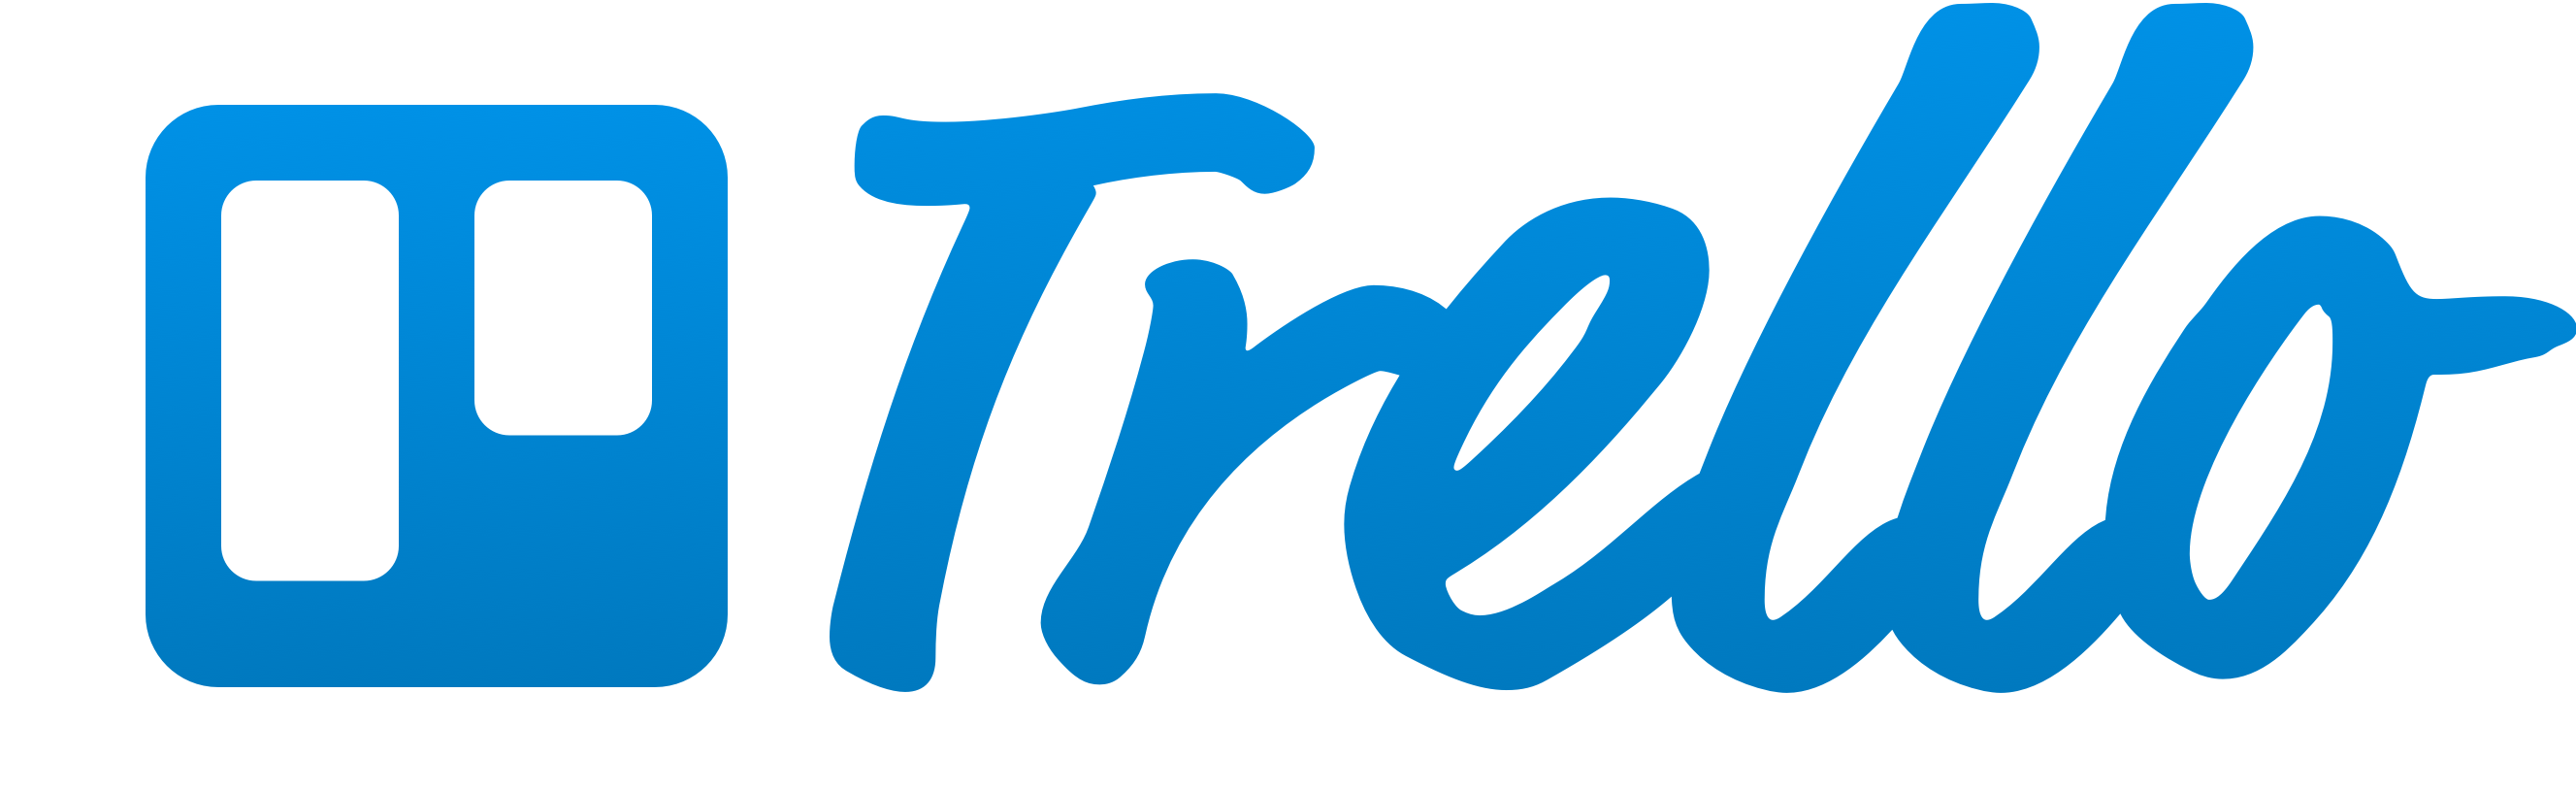 Trello, Inc.